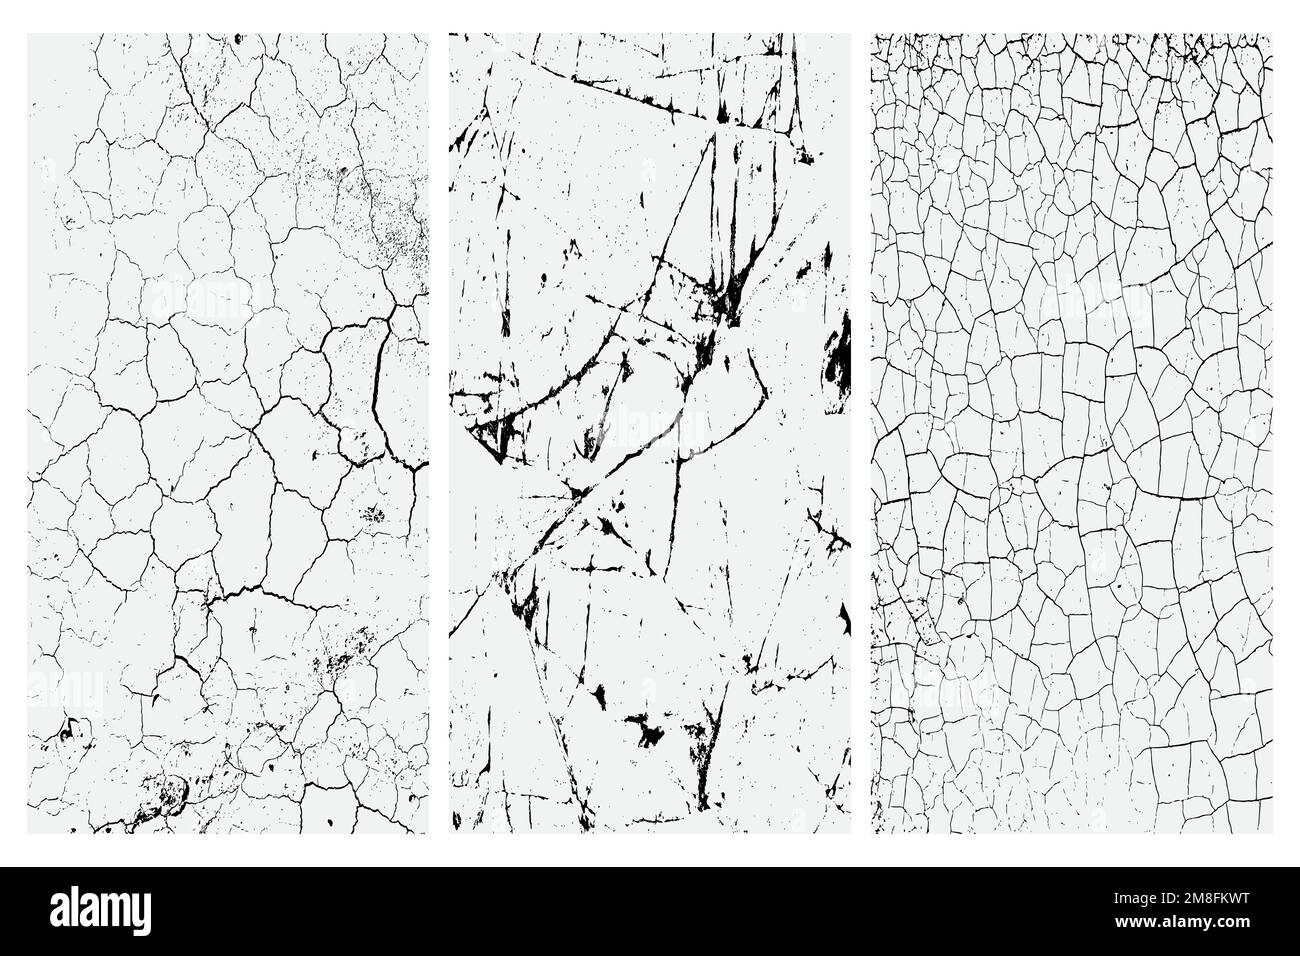 Textur von trockenen Rissen und Fleckenspritzern, schwarzer und weißer Texturhintergrund EPS-Vektor Stock Vektor